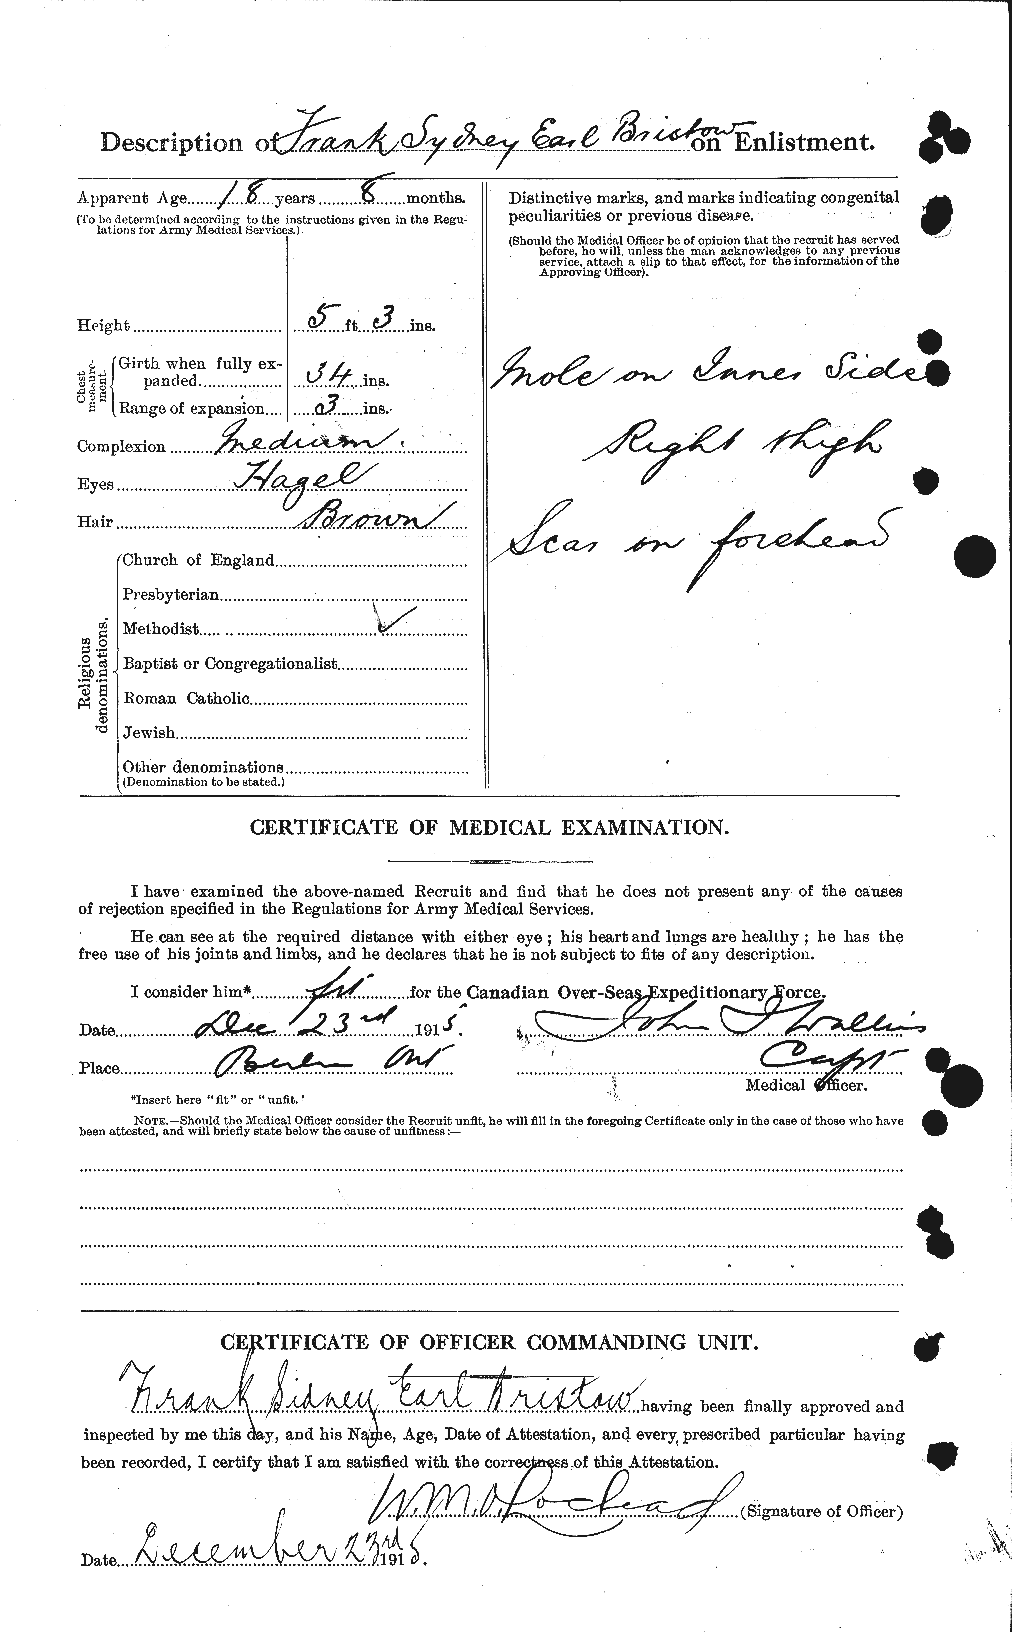 Dossiers du Personnel de la Première Guerre mondiale - CEC 260353b